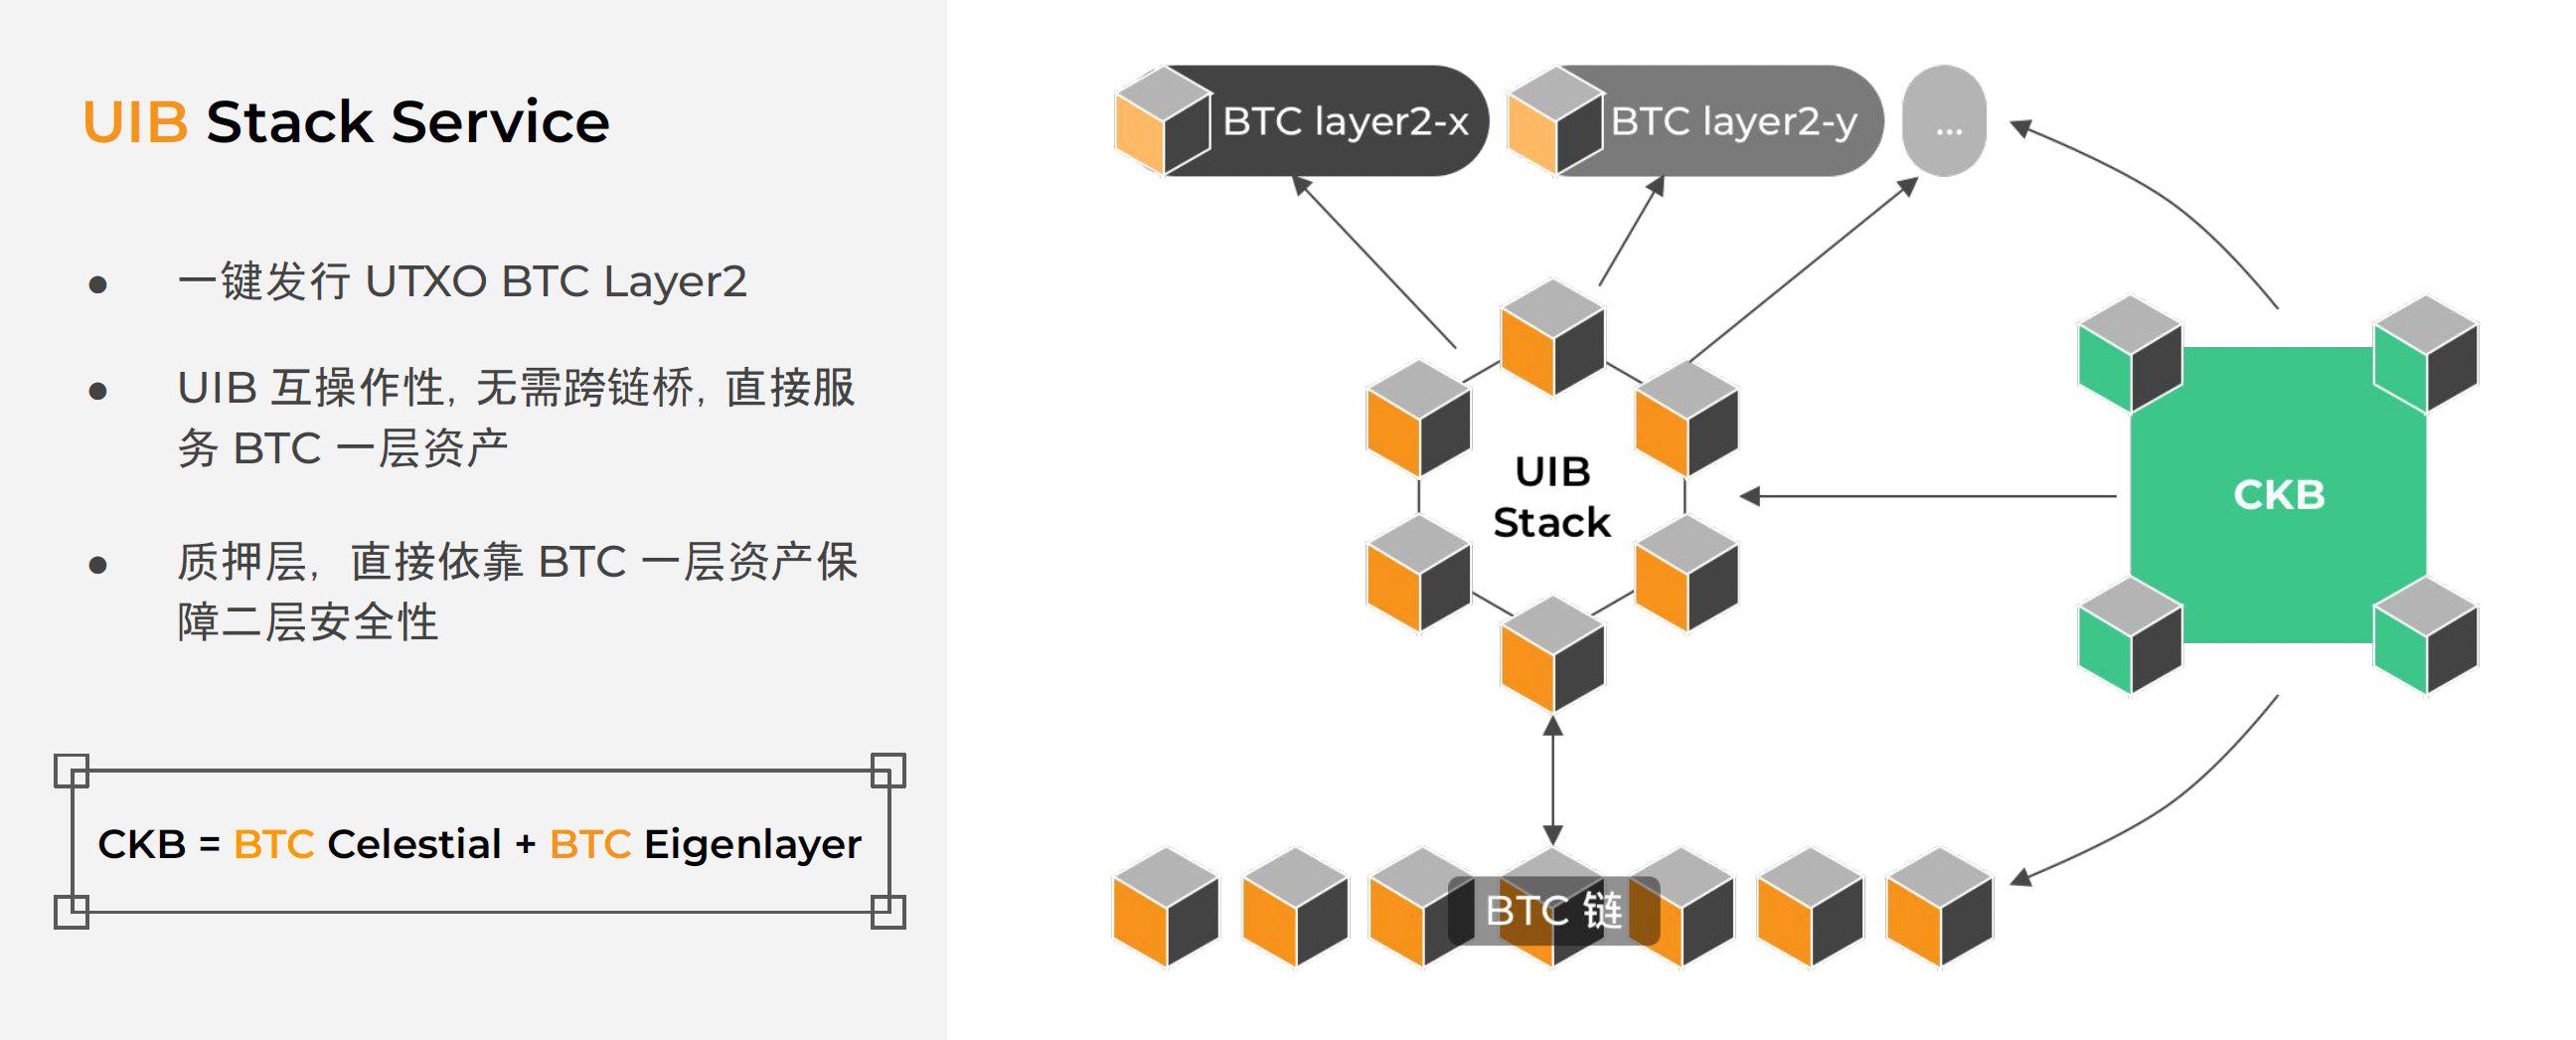 一文讀懂模組化 BTC Layer2 一鍵發鏈平台 UTXO Stack